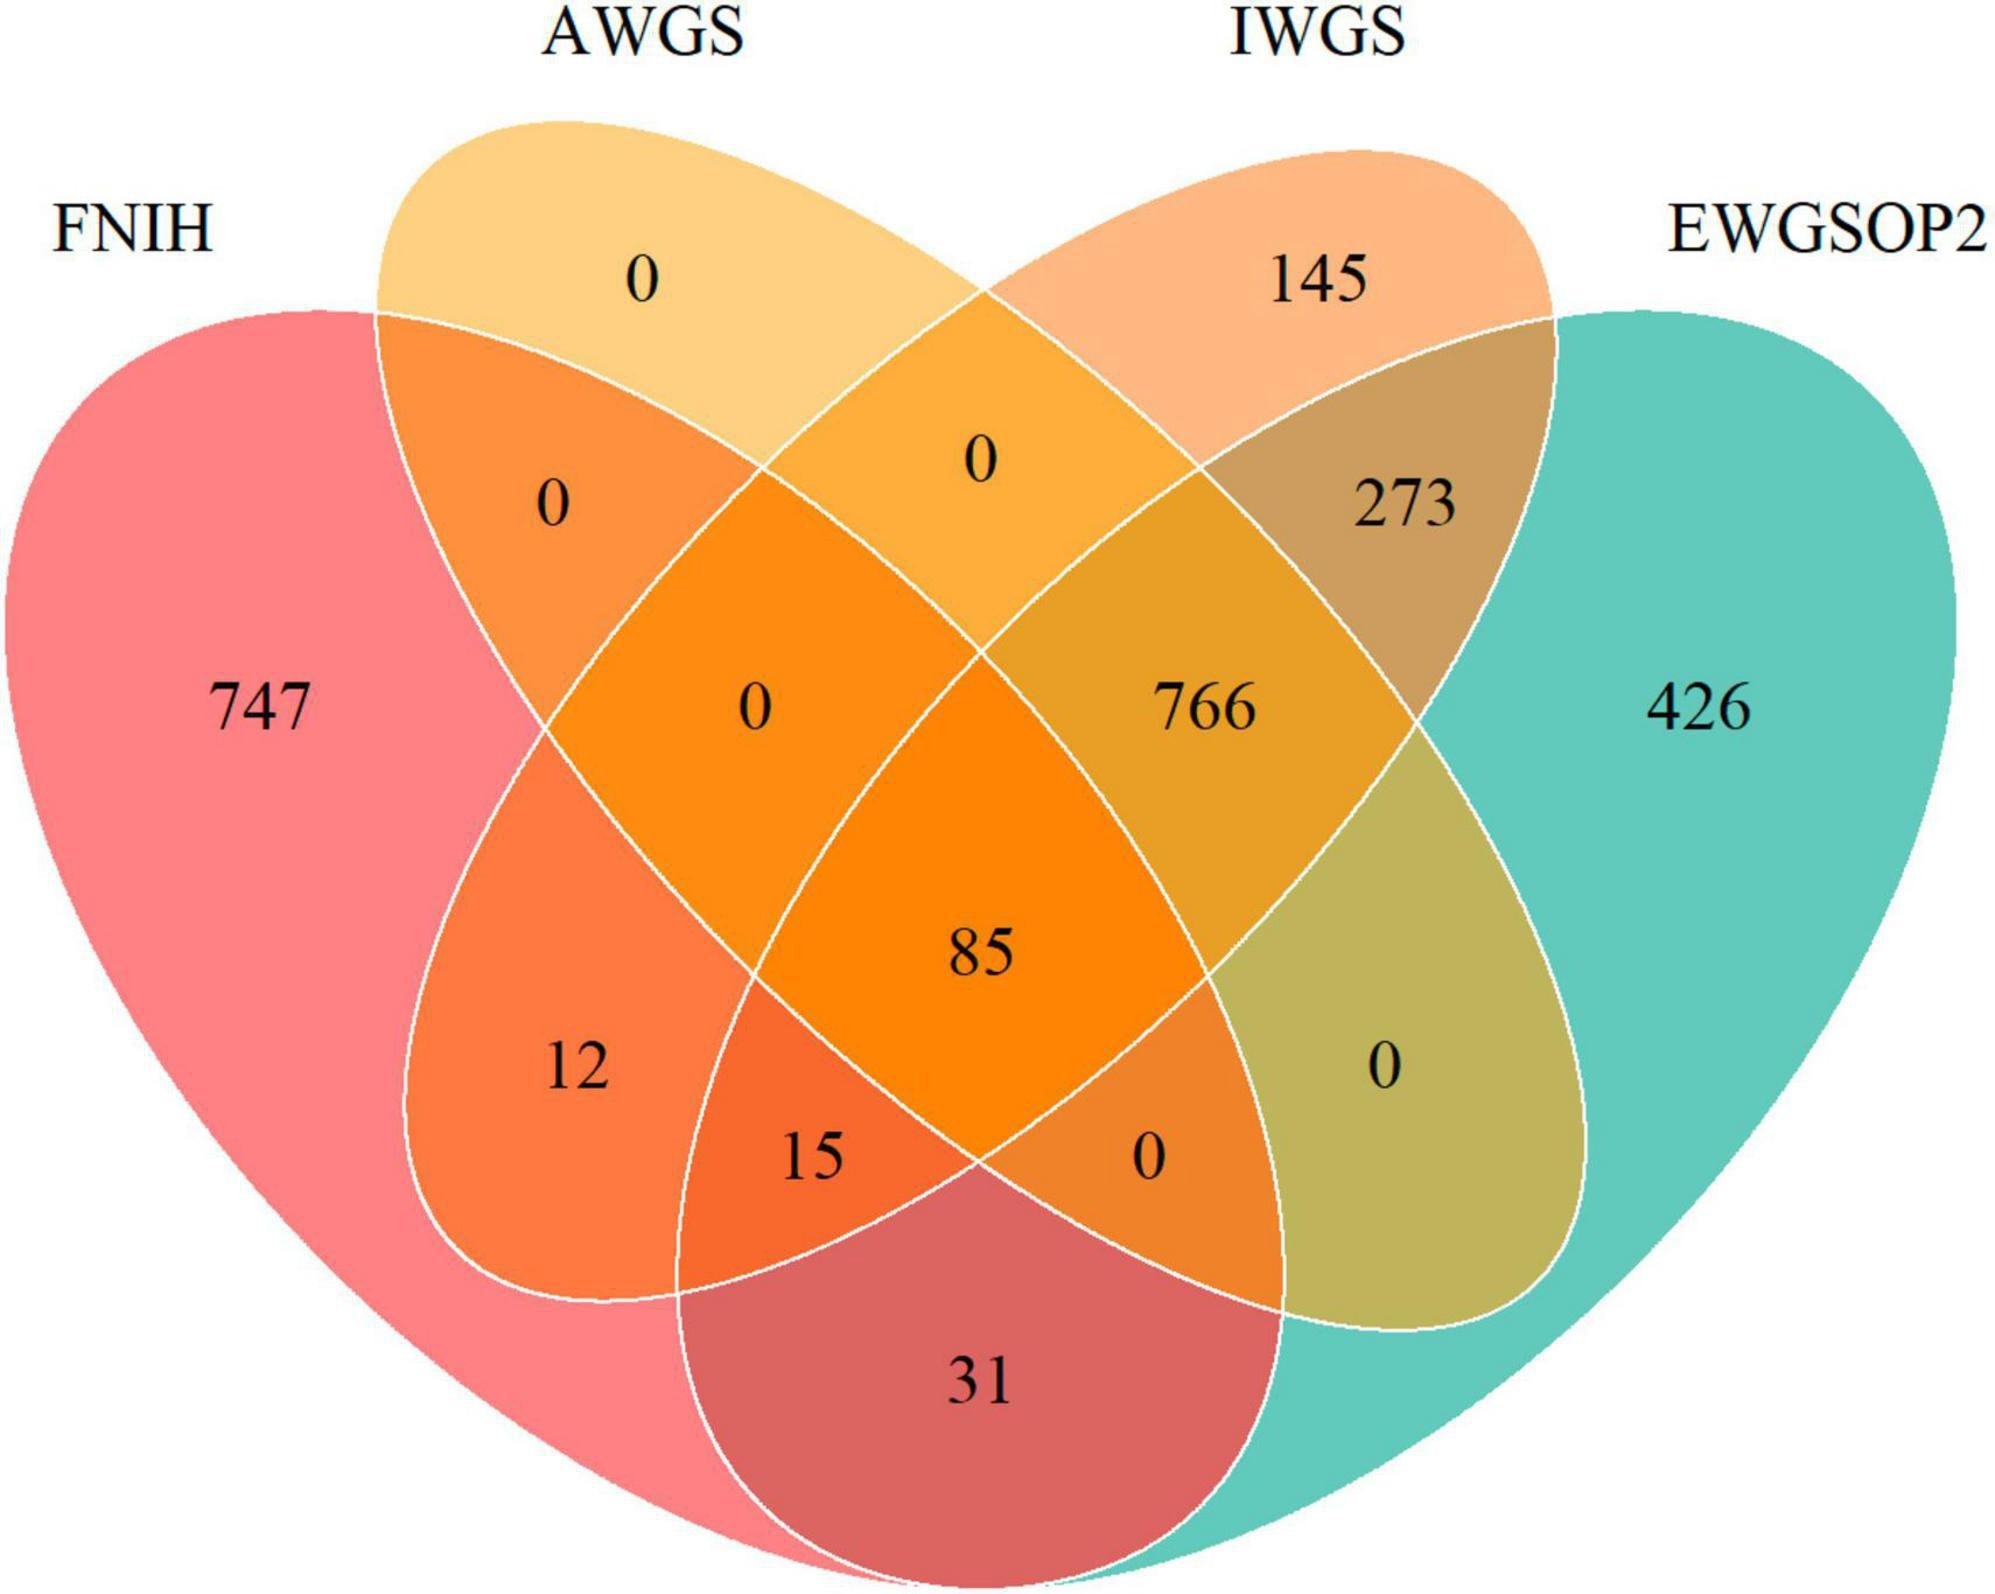 Diagrama de Venn que muestra la superposición de la prevalencia de masa muscular baja según diferentes definiciones de FNIH, EWGSOP2, AWGS e IWGS.